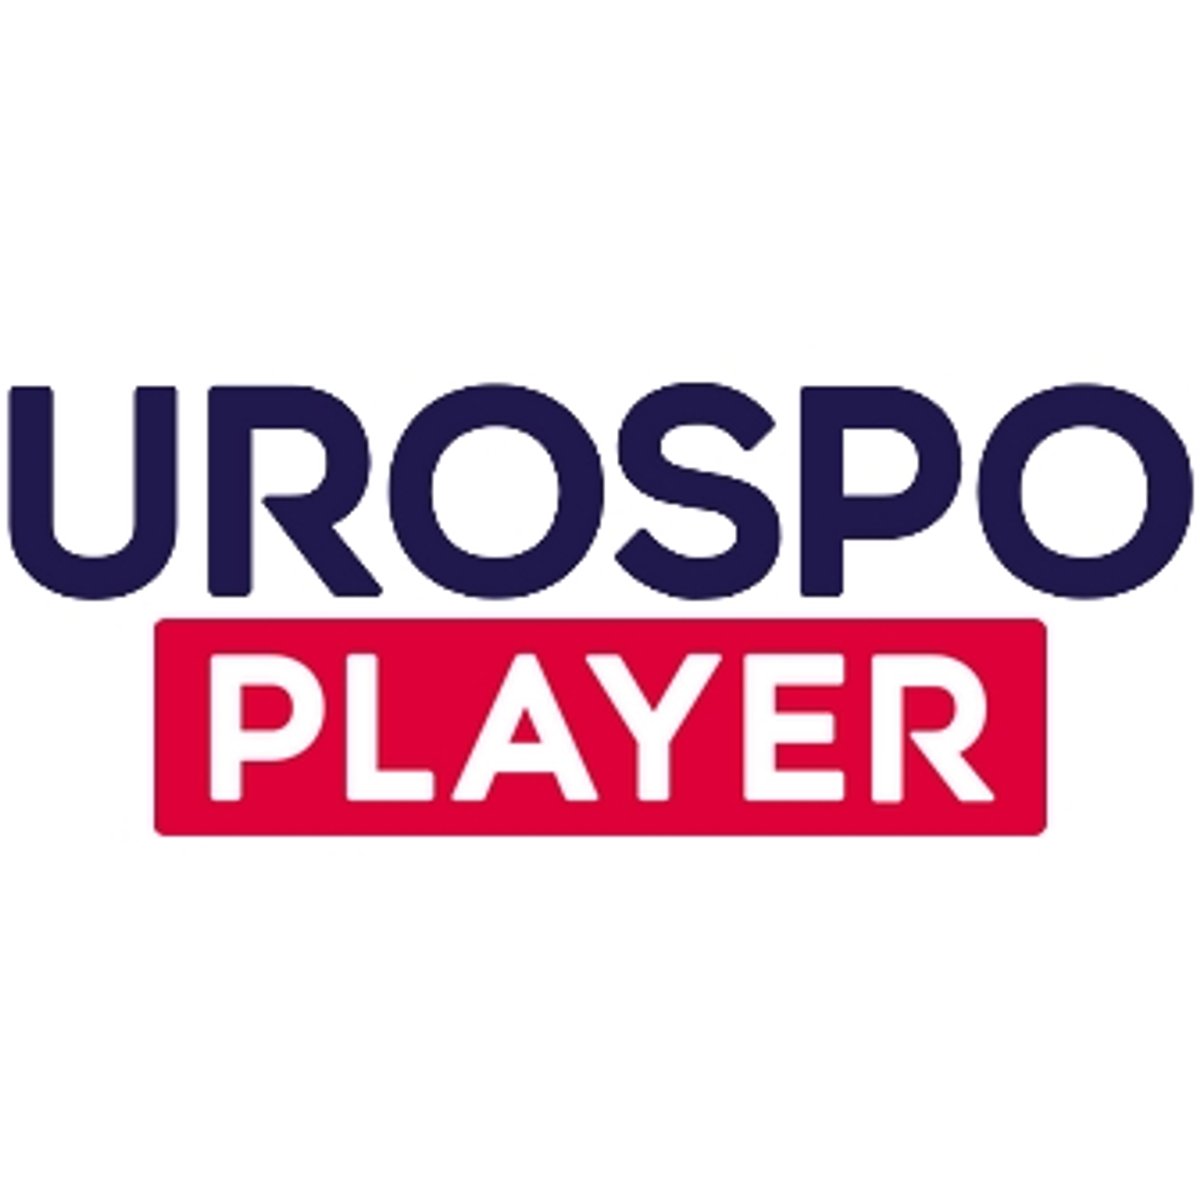 Eurosport Player mit mehreren Geräten gleichzeitig nutzen Das geht